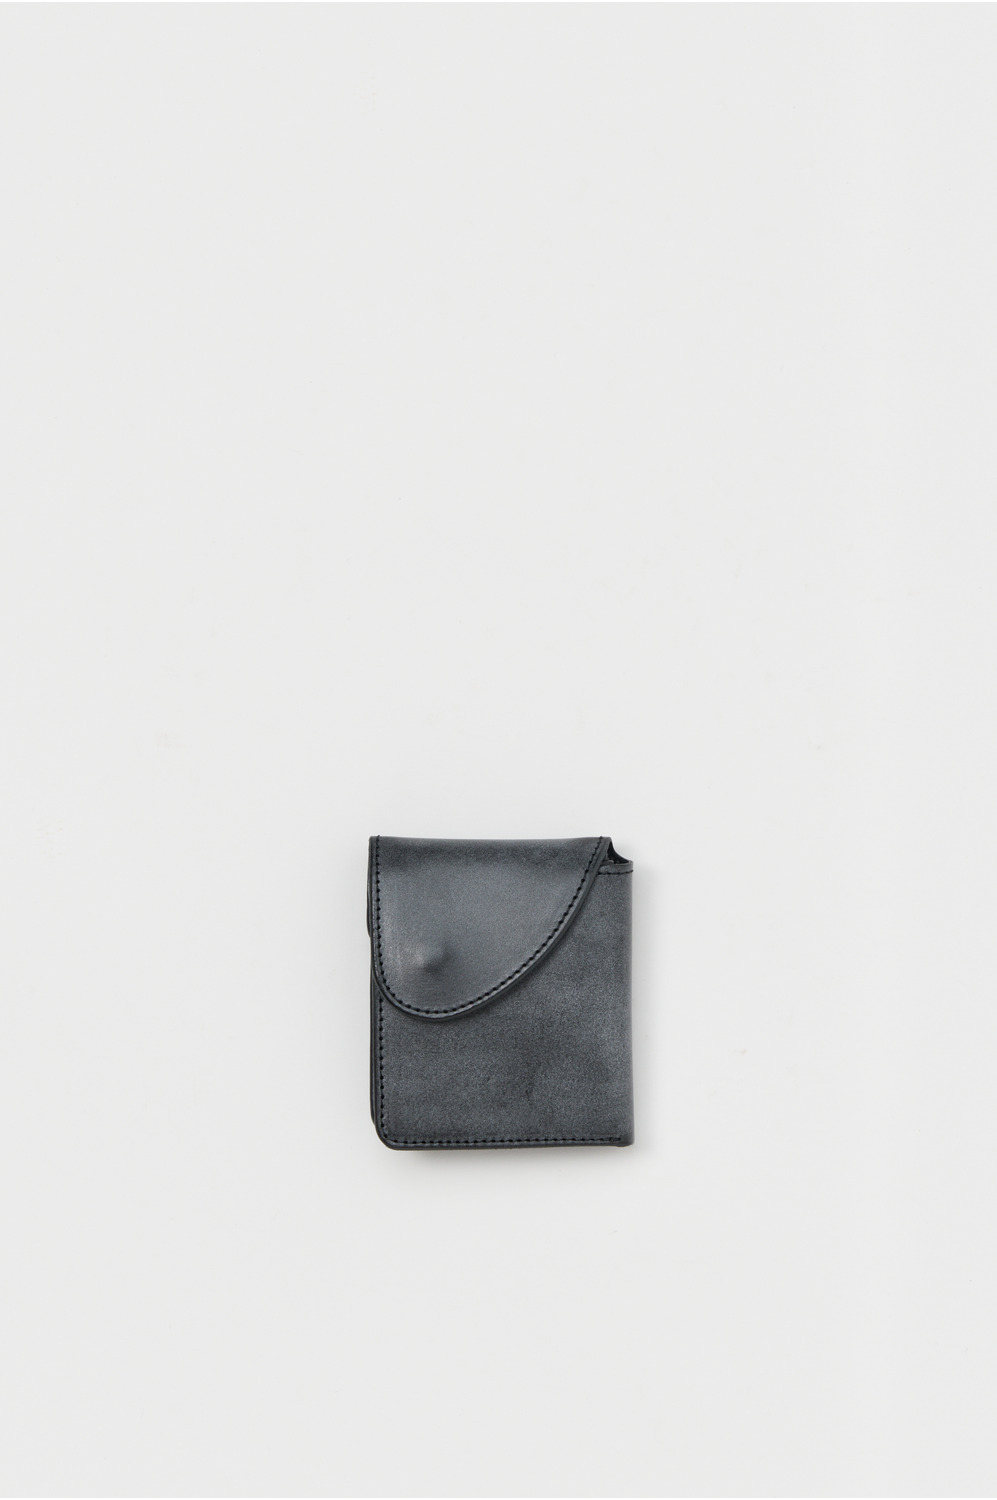 Hender Scheme wallet / Black